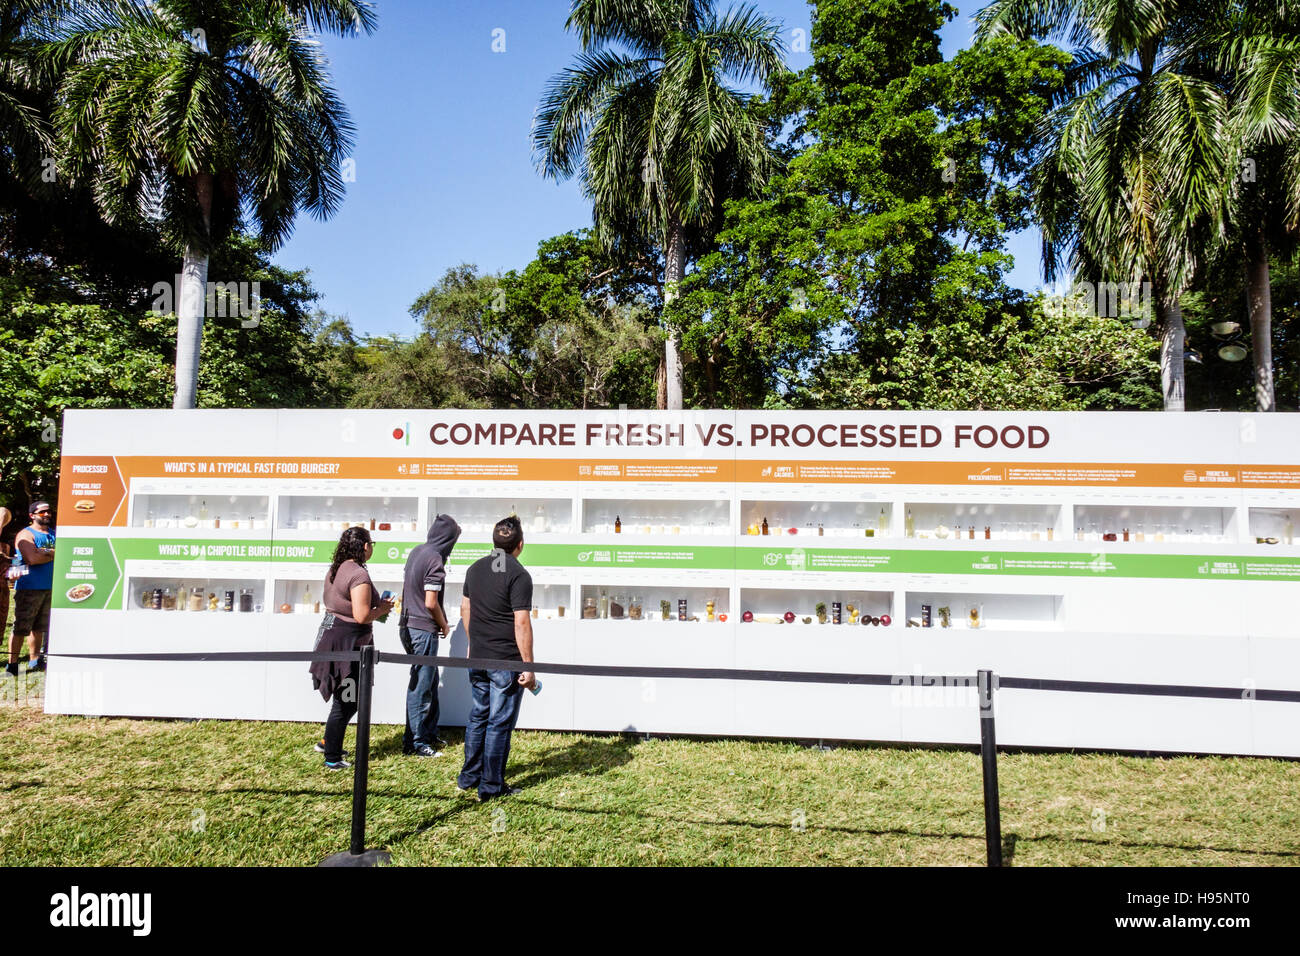 Miami Florida, Bayfront Park, Chipotle Ckultivieren Festival, Ausstellungsausstellung Sammlung, frische vs. Verarbeitete Lebensmittel, Lebensmittel, Besucher reisen Reise Tour zu Stockfoto